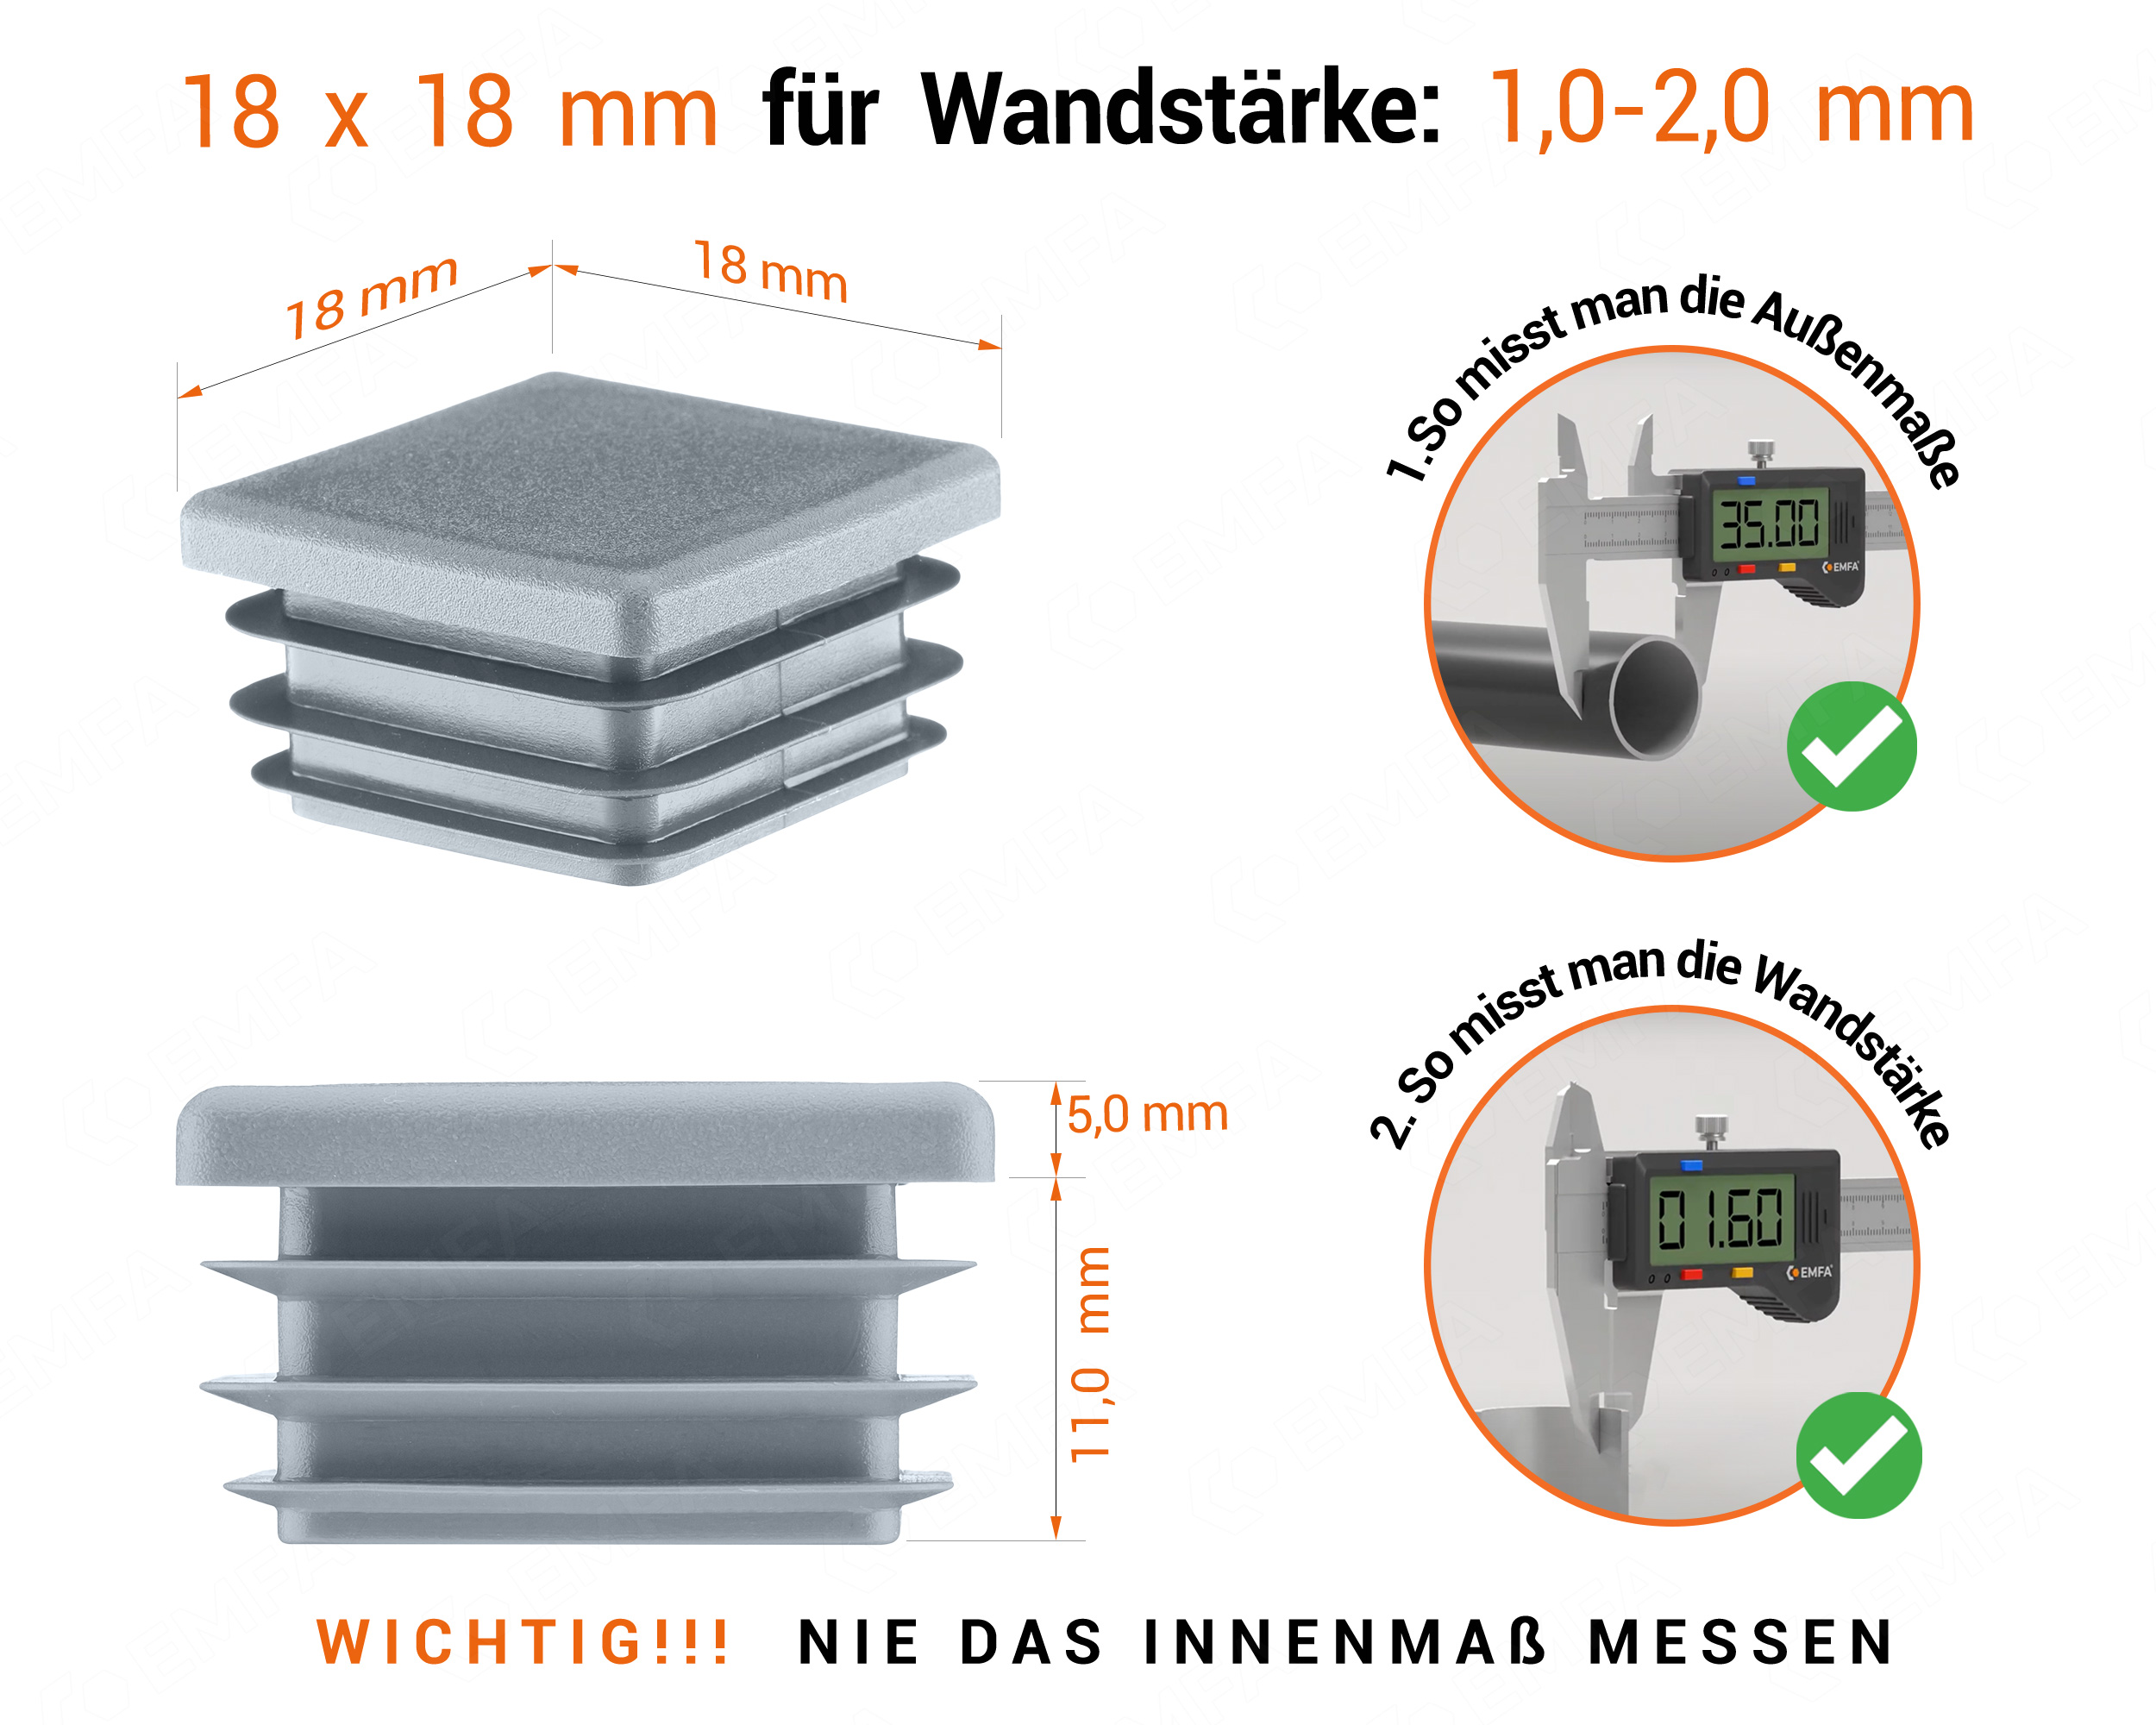 Grau Endkappe für Vierkantrohre in der Größe 18x18 mm mit technischen Abmessungen und Anleitung für korrekte Messung